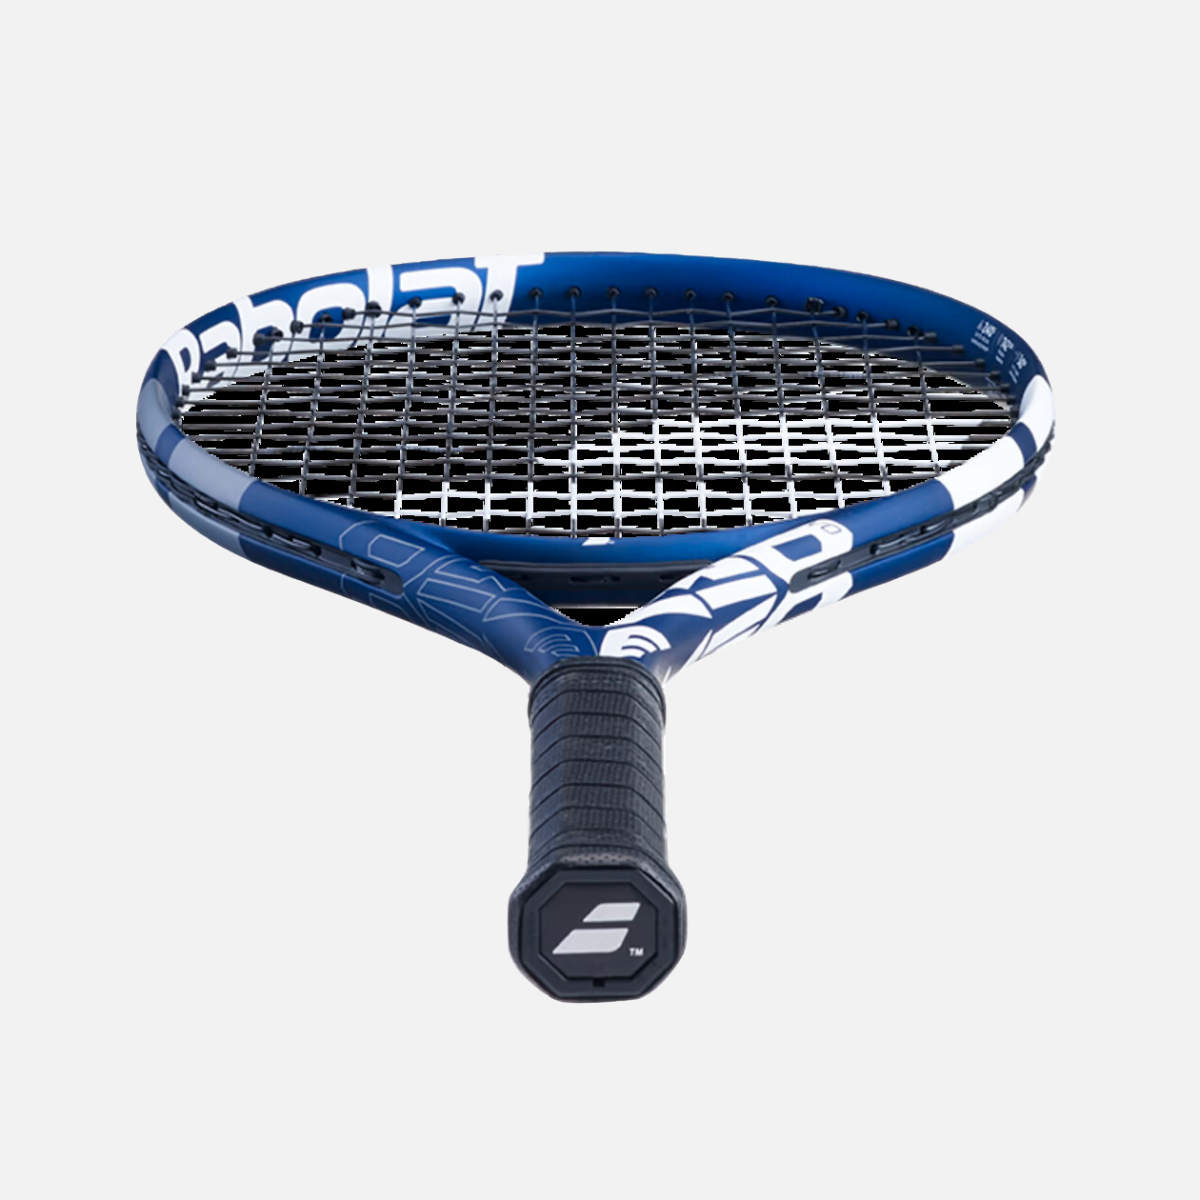 Babolat Evo Drive 115 Unstrung Tennis Racquet -Dark Blue